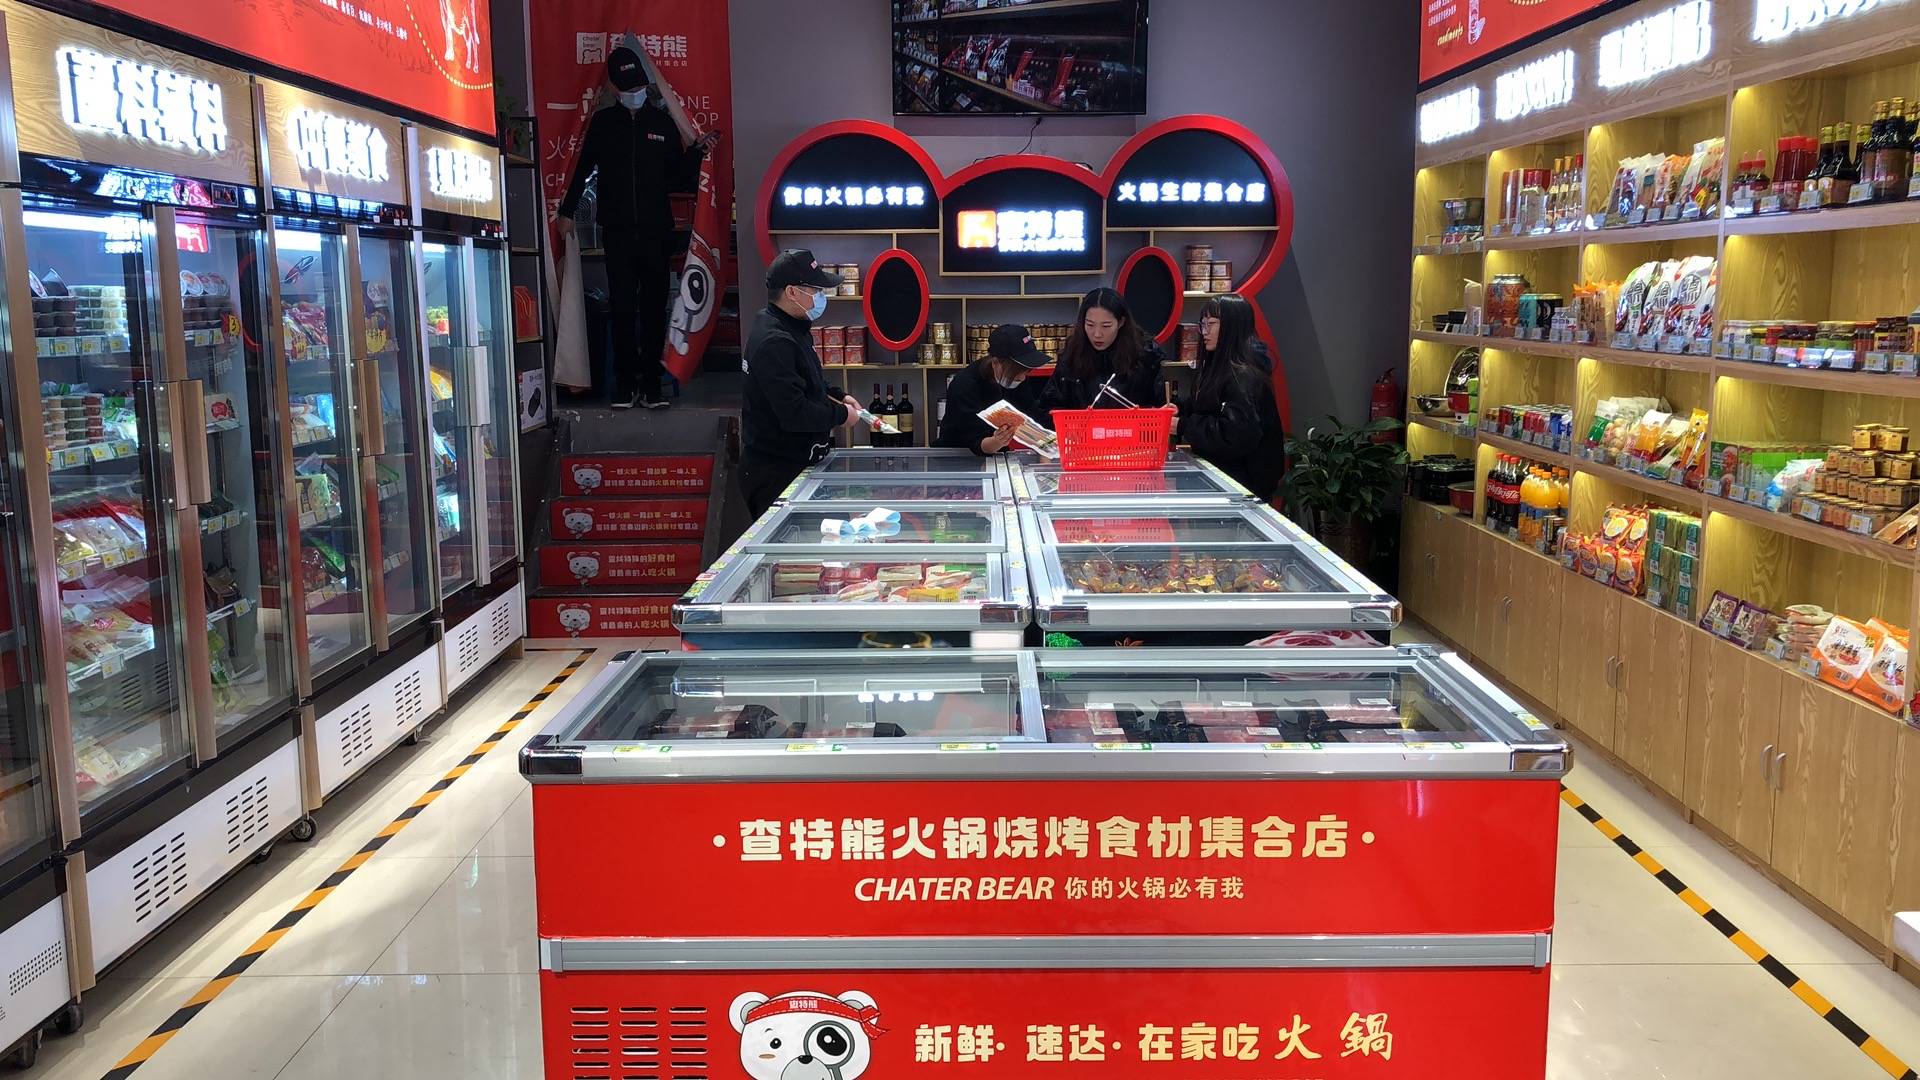 火锅食材超市"查特熊"是推出的火锅加盟项目.